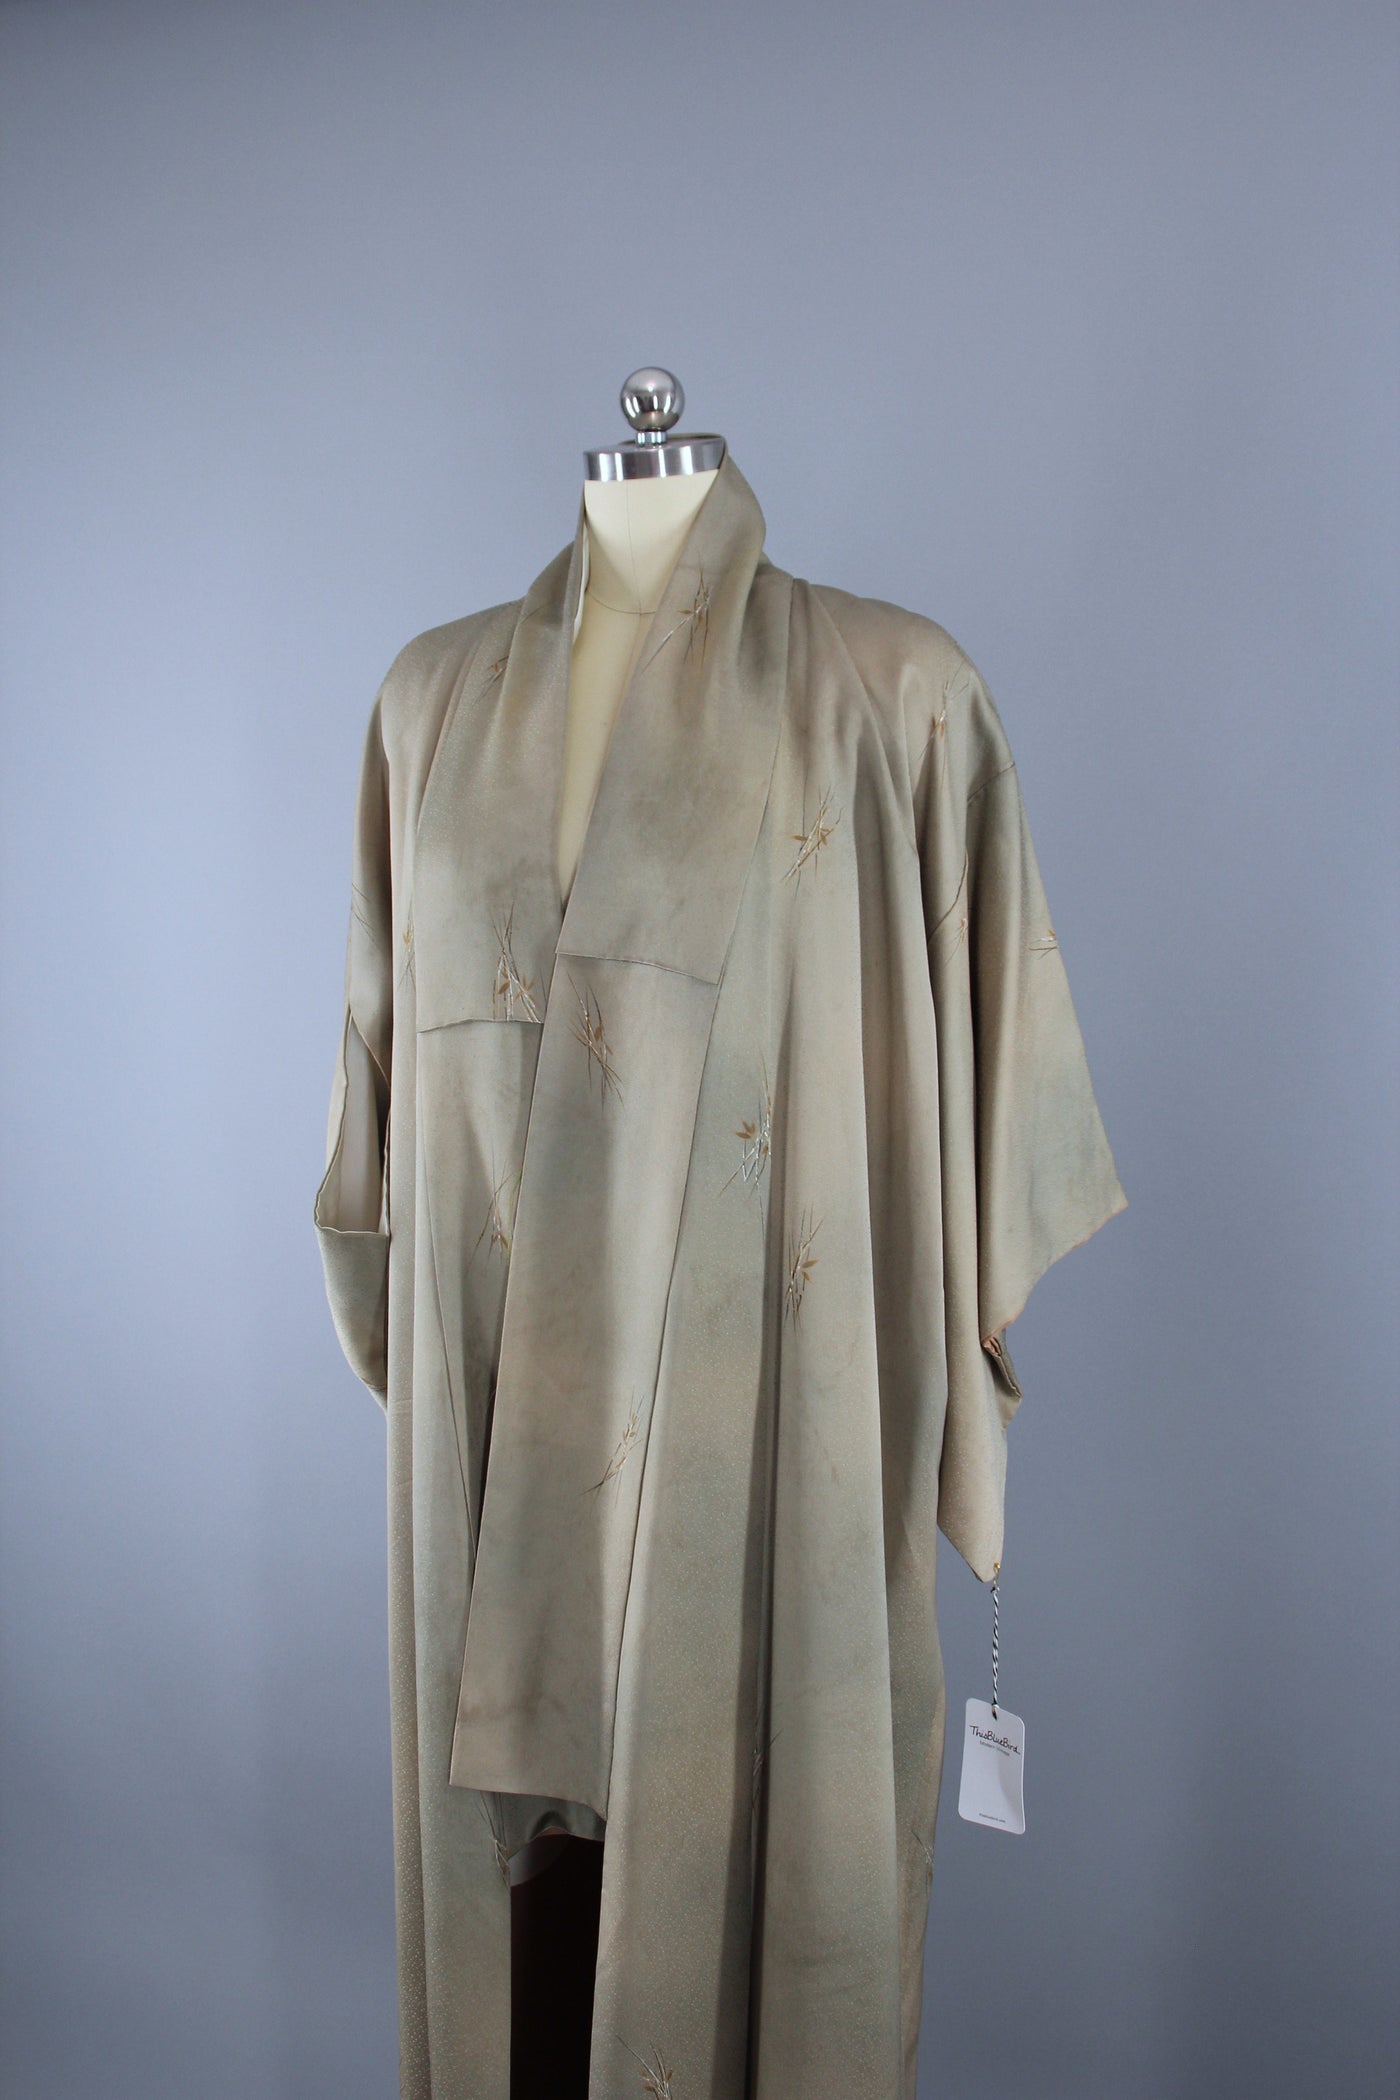 1960s Vintage Silk Kimono Robe / Taupe Bamboo - ThisBlueBird